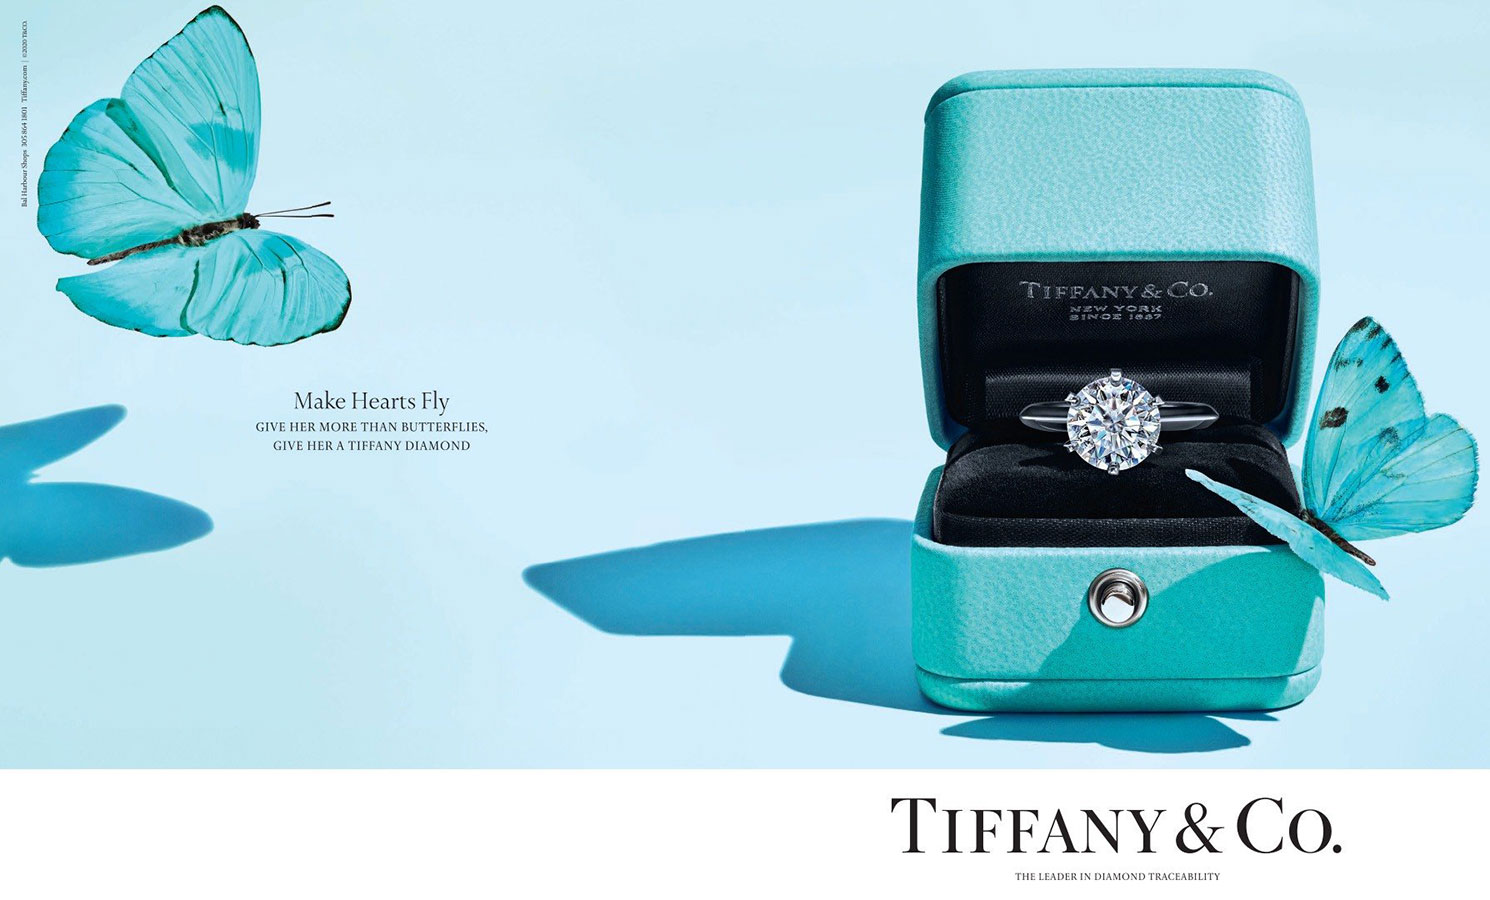 Thương hiệu Tiffany & Co. (hay Tiffany) là một thương hiệu chuyên về trang sức nổi tiếng của Mỹ